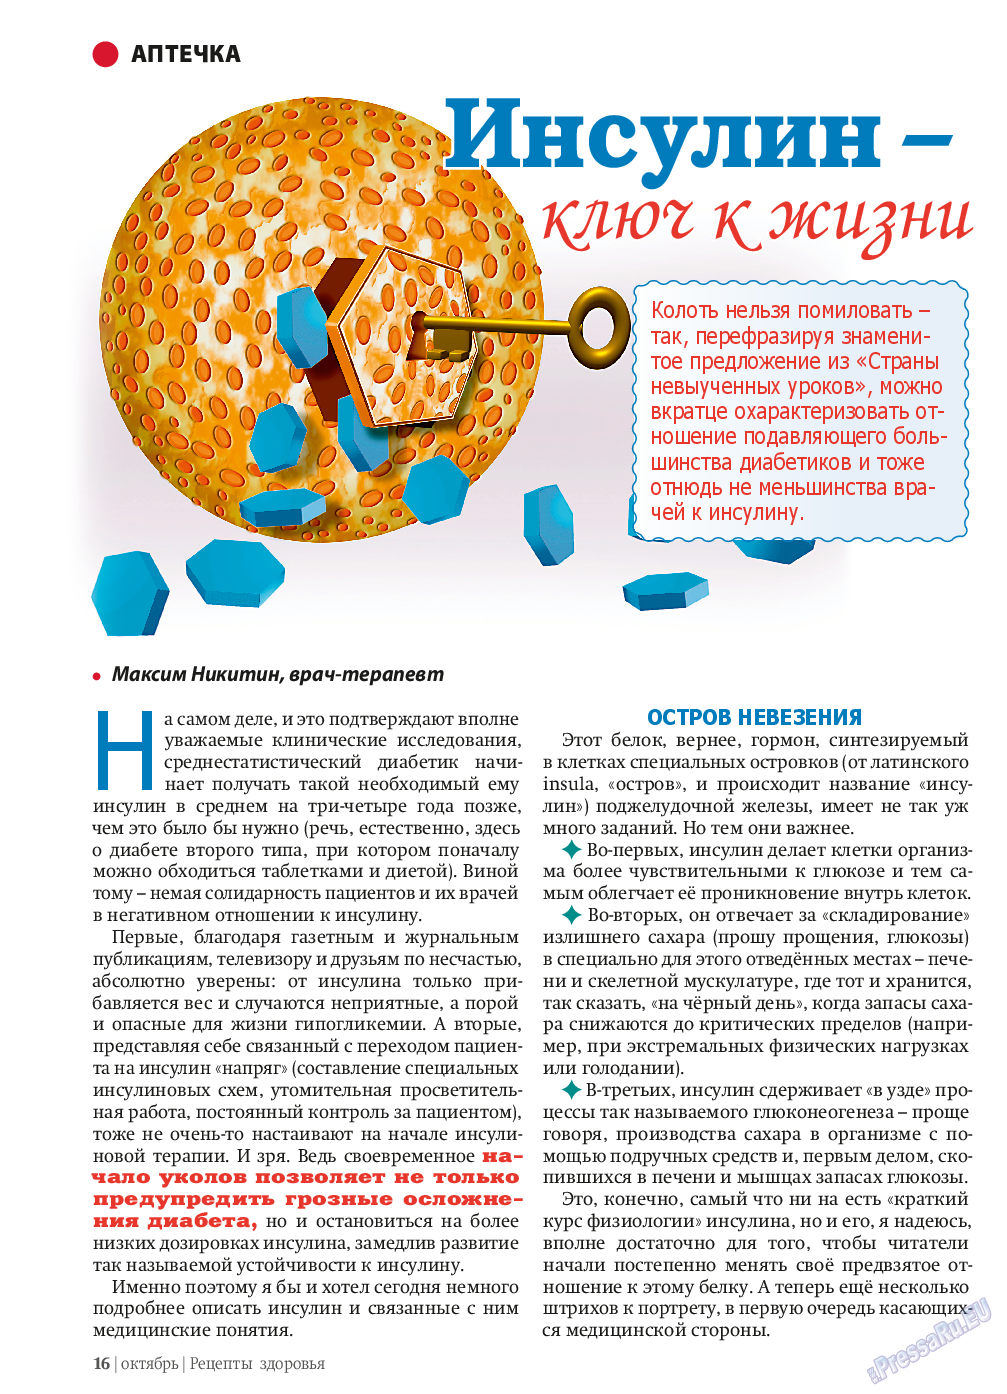 Рецепты здоровья, журнал. 2013 №10 стр.16